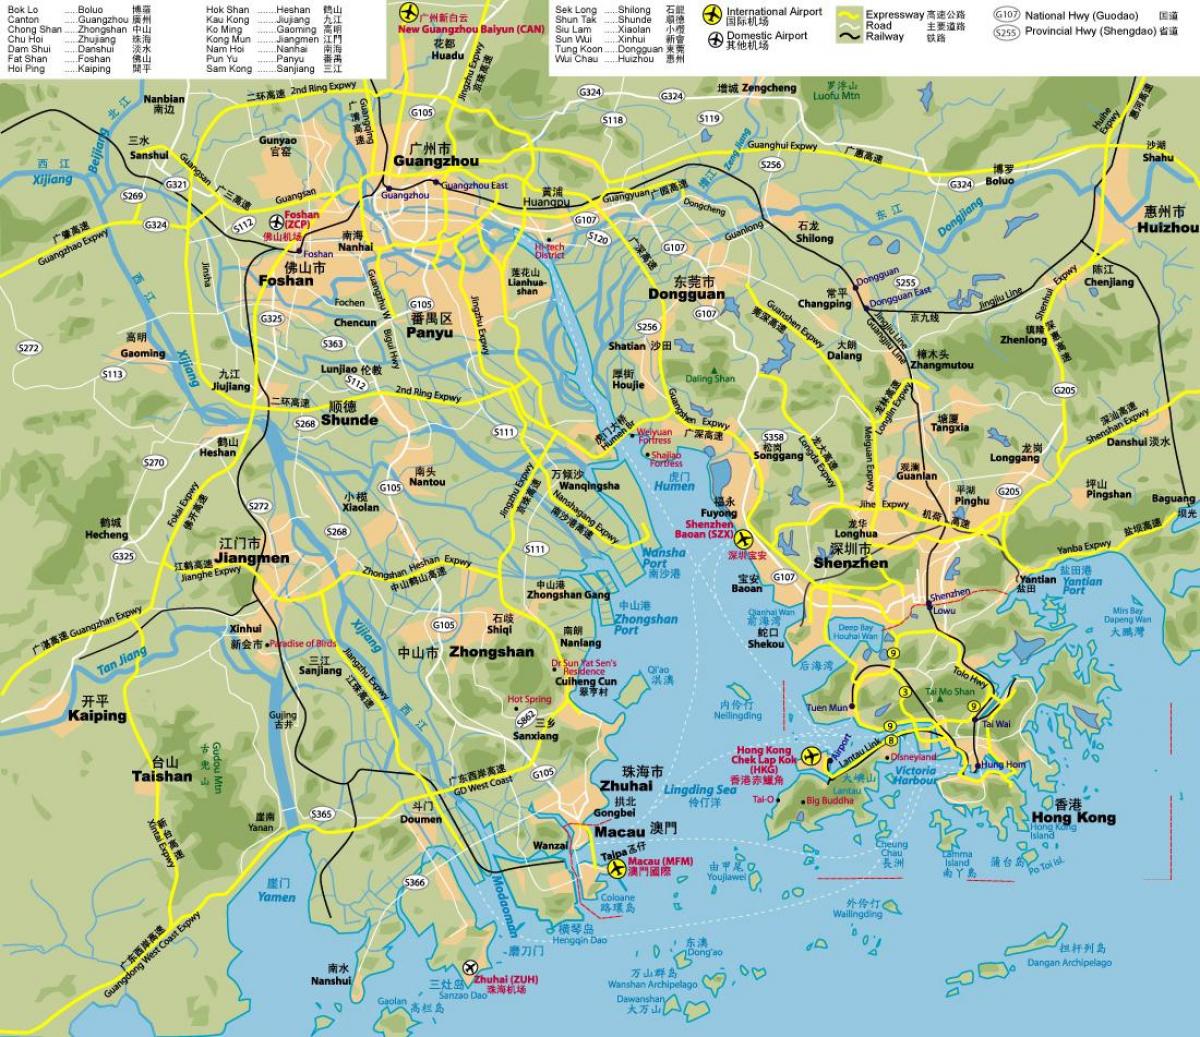 hartën e rrugës së Hong Kongut